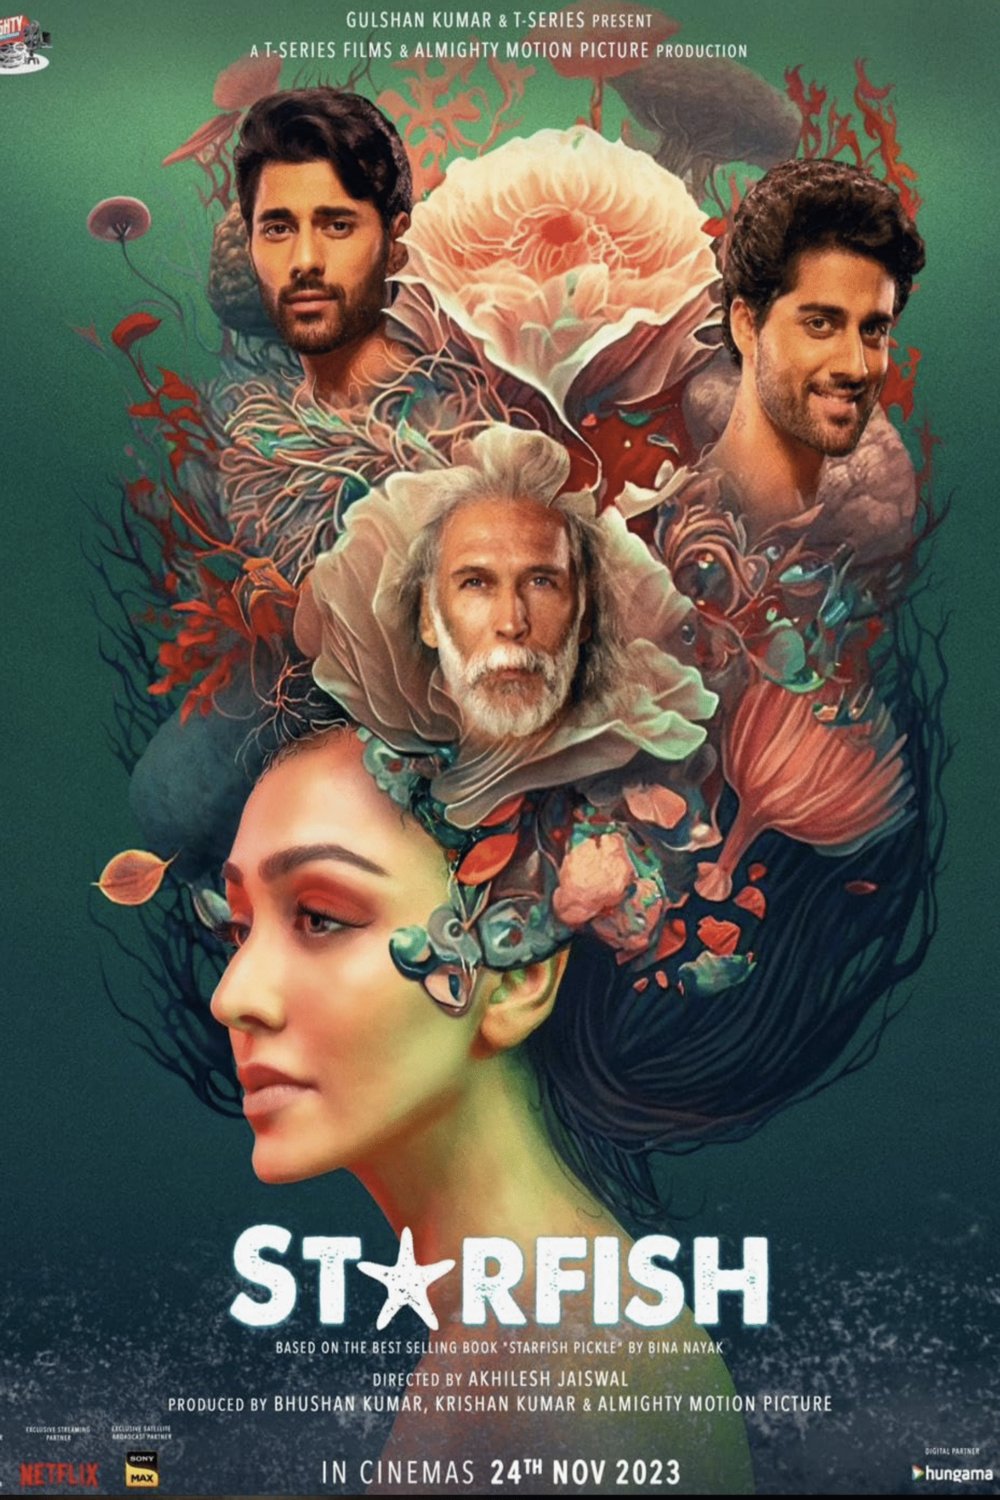 Hindi poster of the movie Starfish